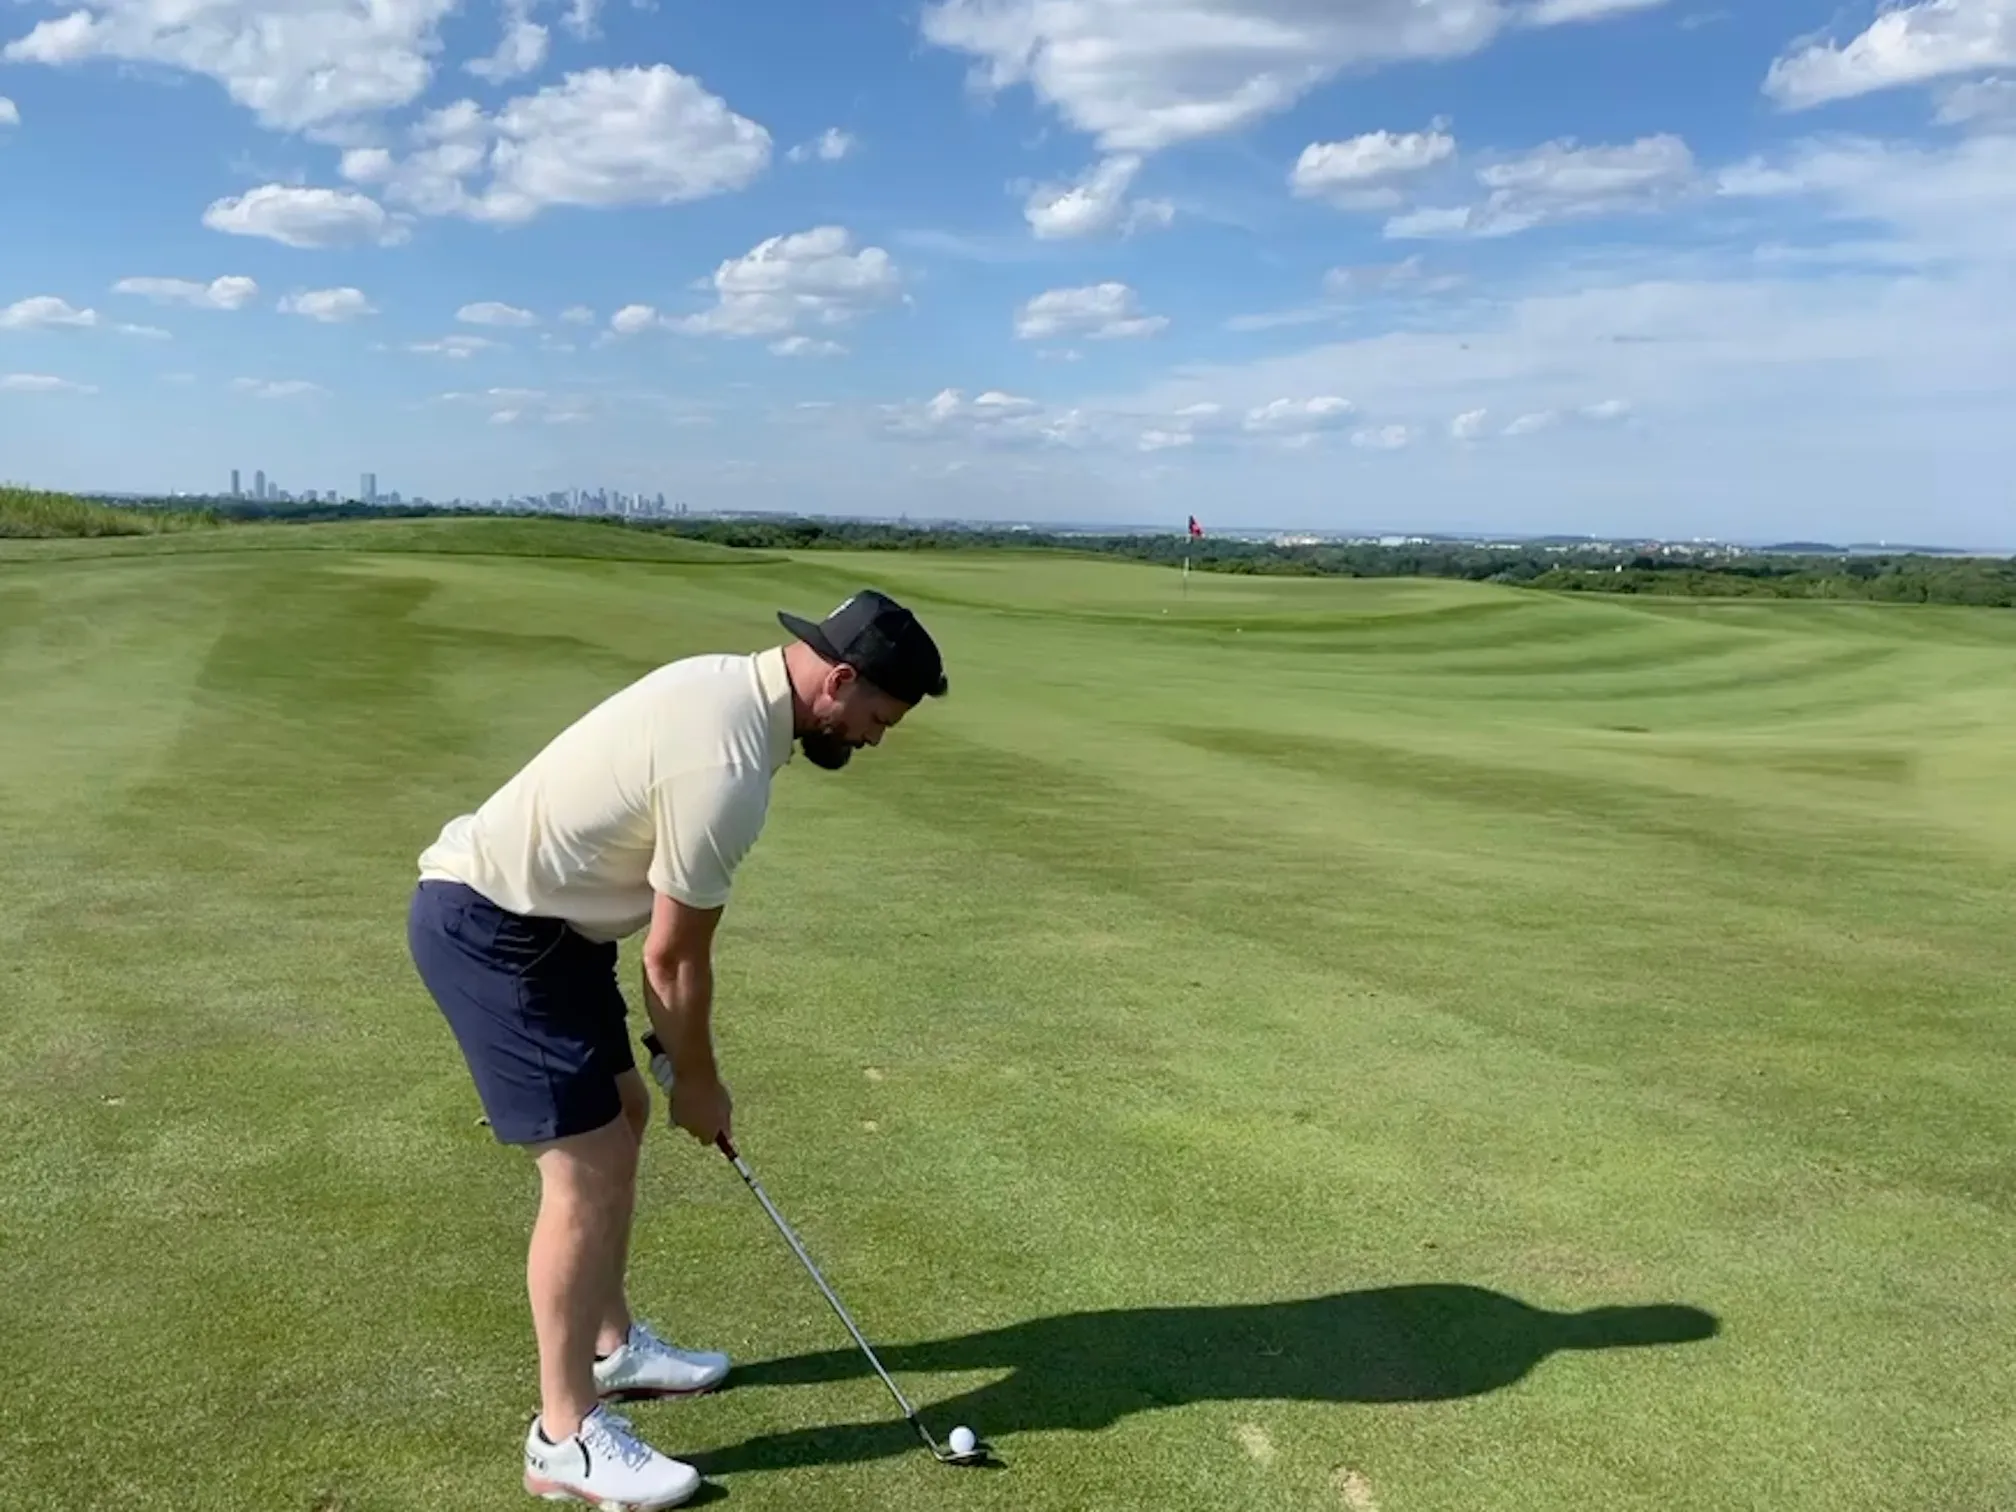 Rob Bellamy swinging a golf club on a golf course